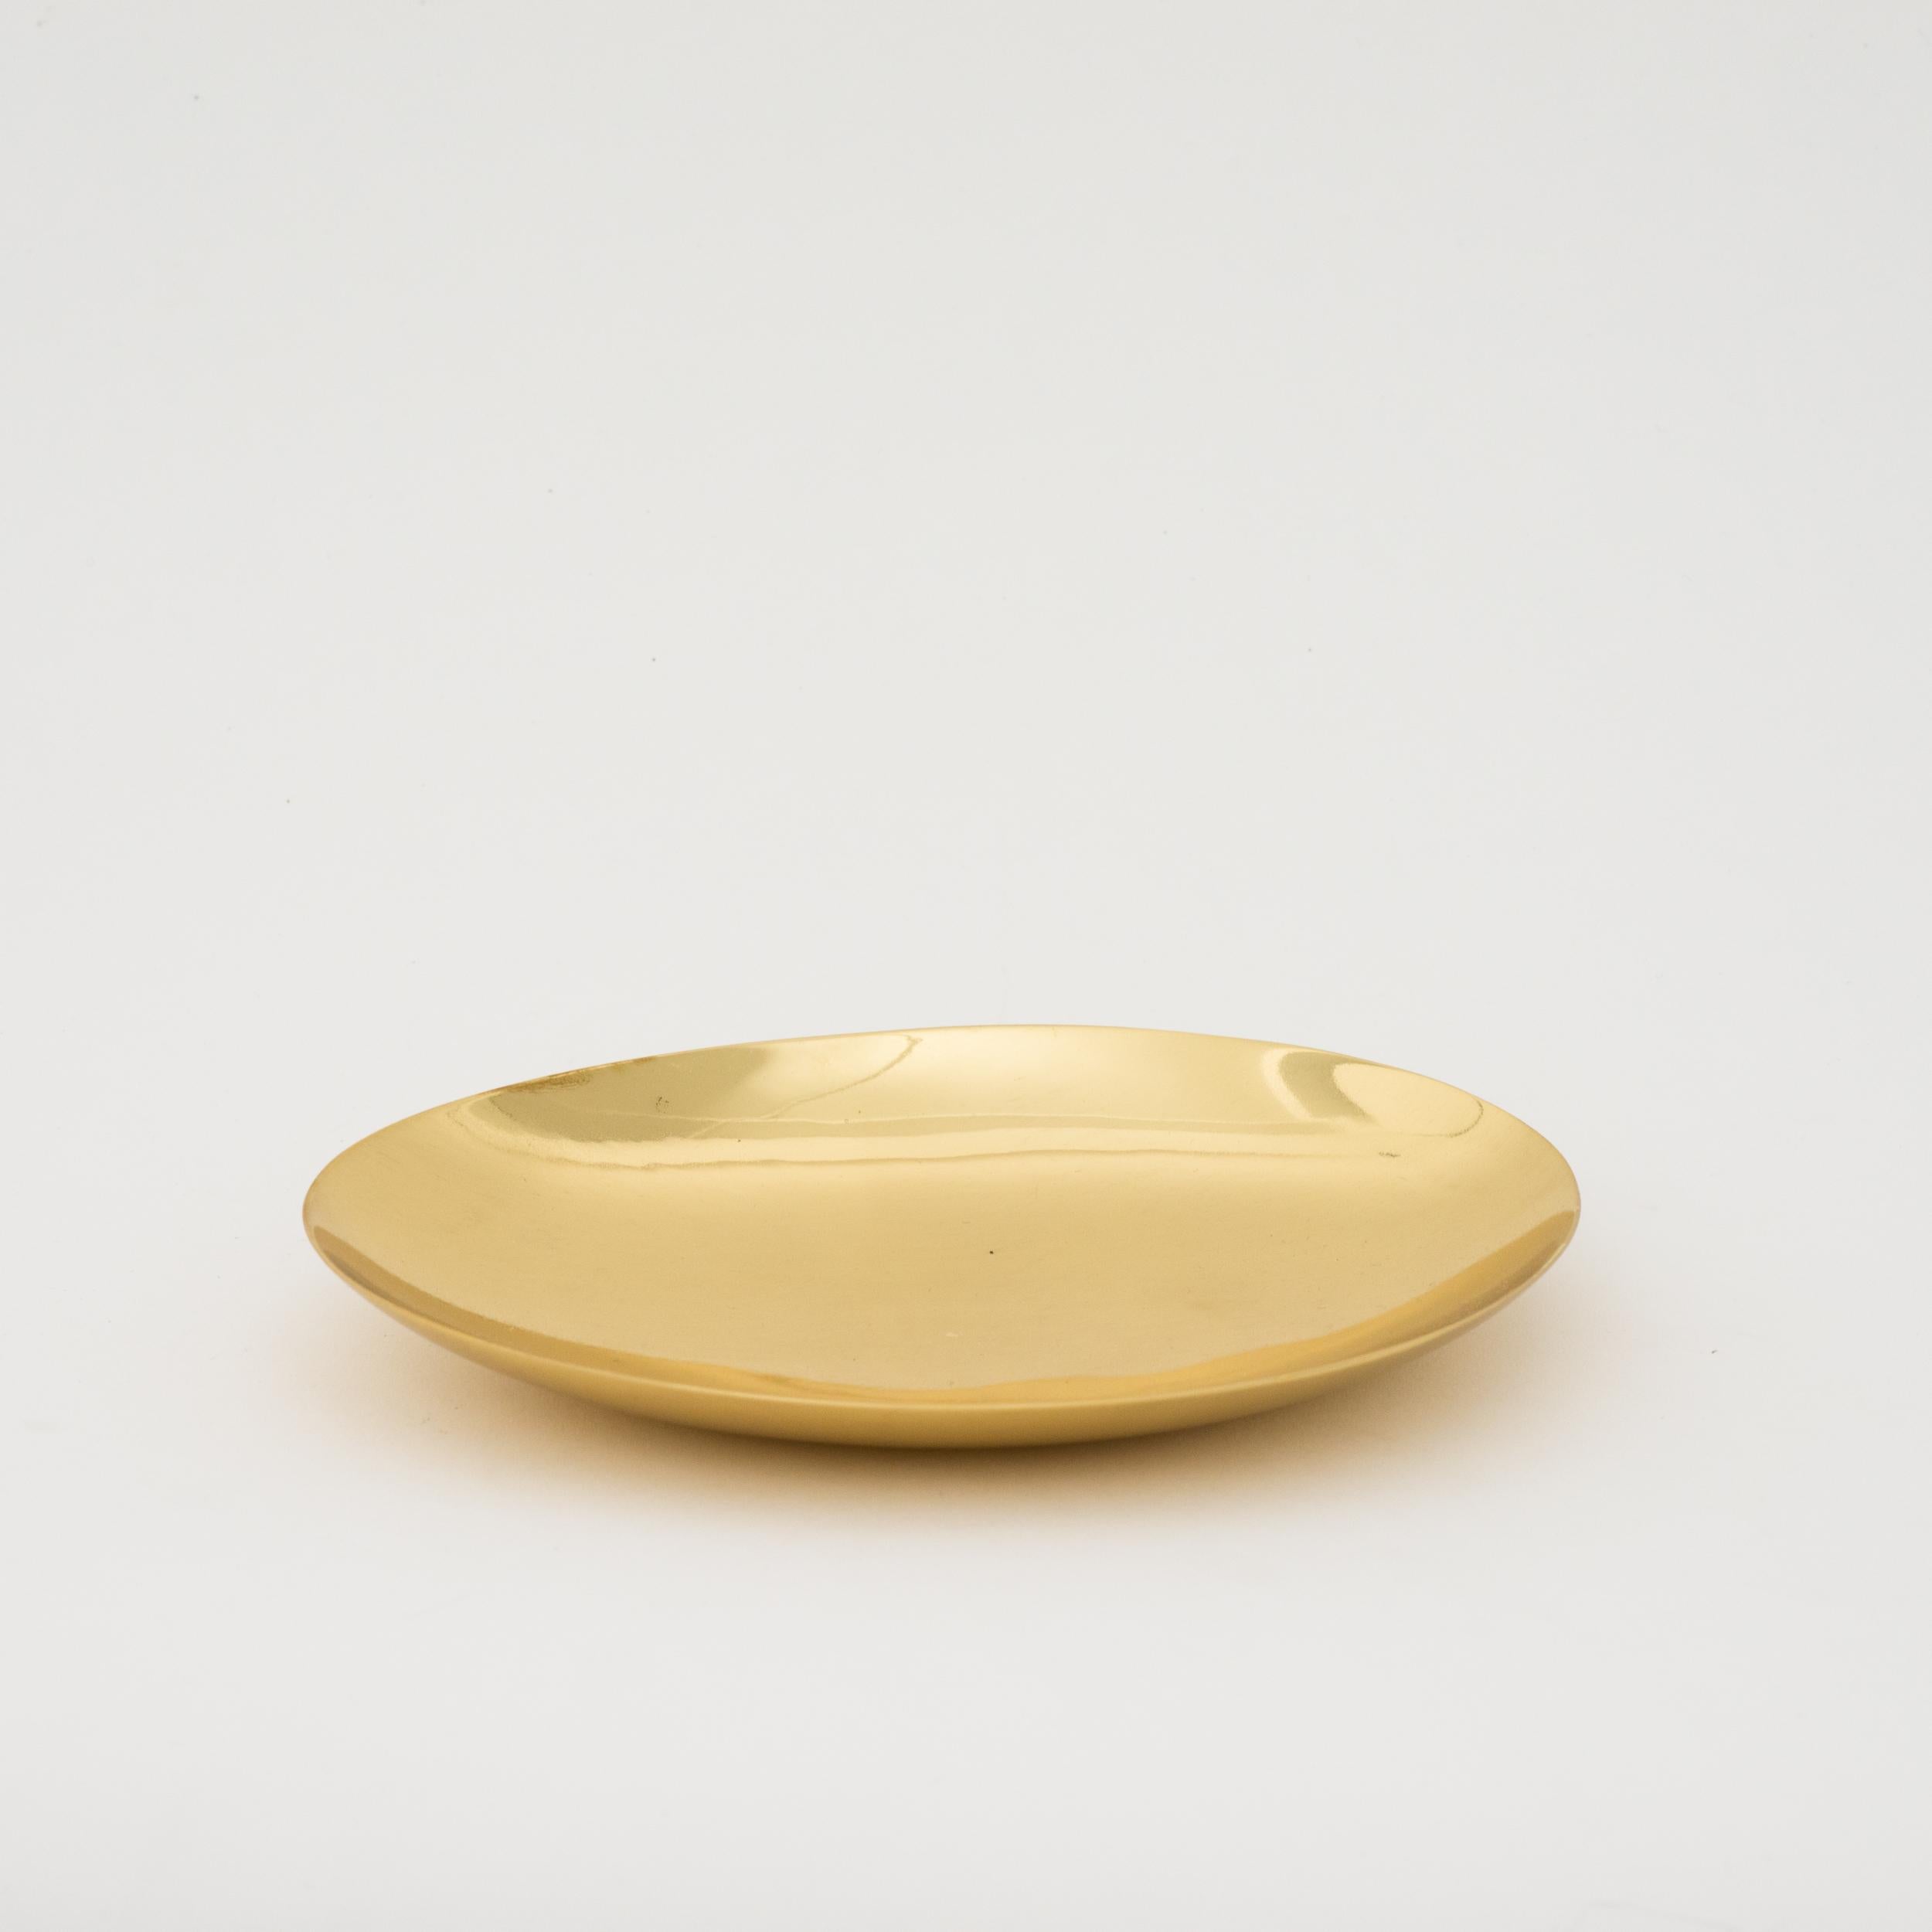 Contemporary Set of 3 Handmade Cast Polished Brass Decorative Plates